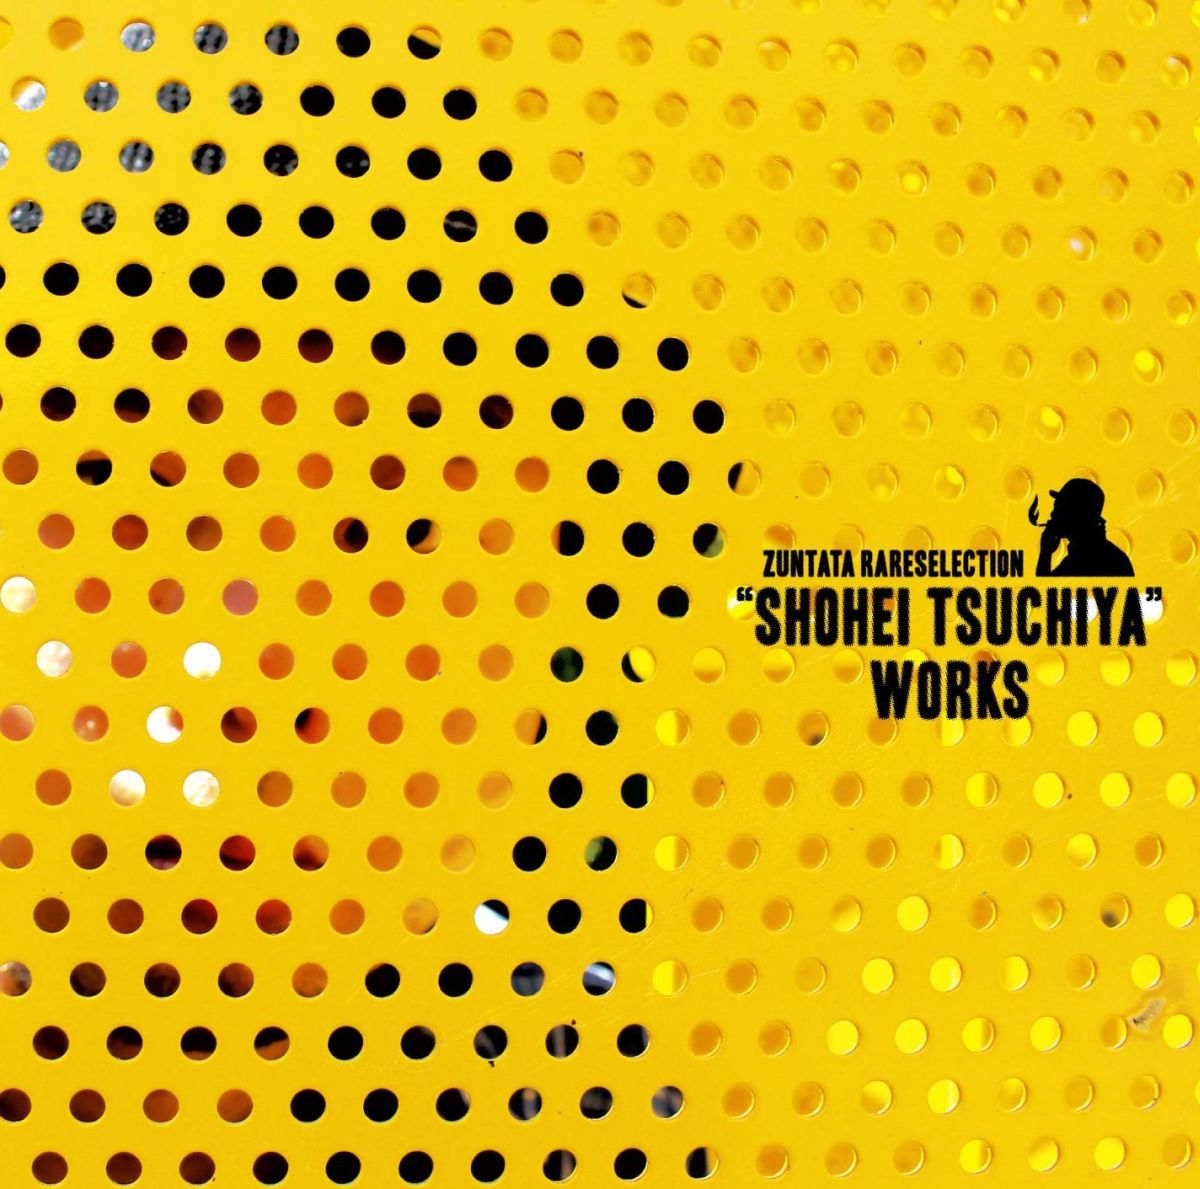 ZUNTATA RARE SELECTION “SHOHEI TSUCHIYA" WORKS